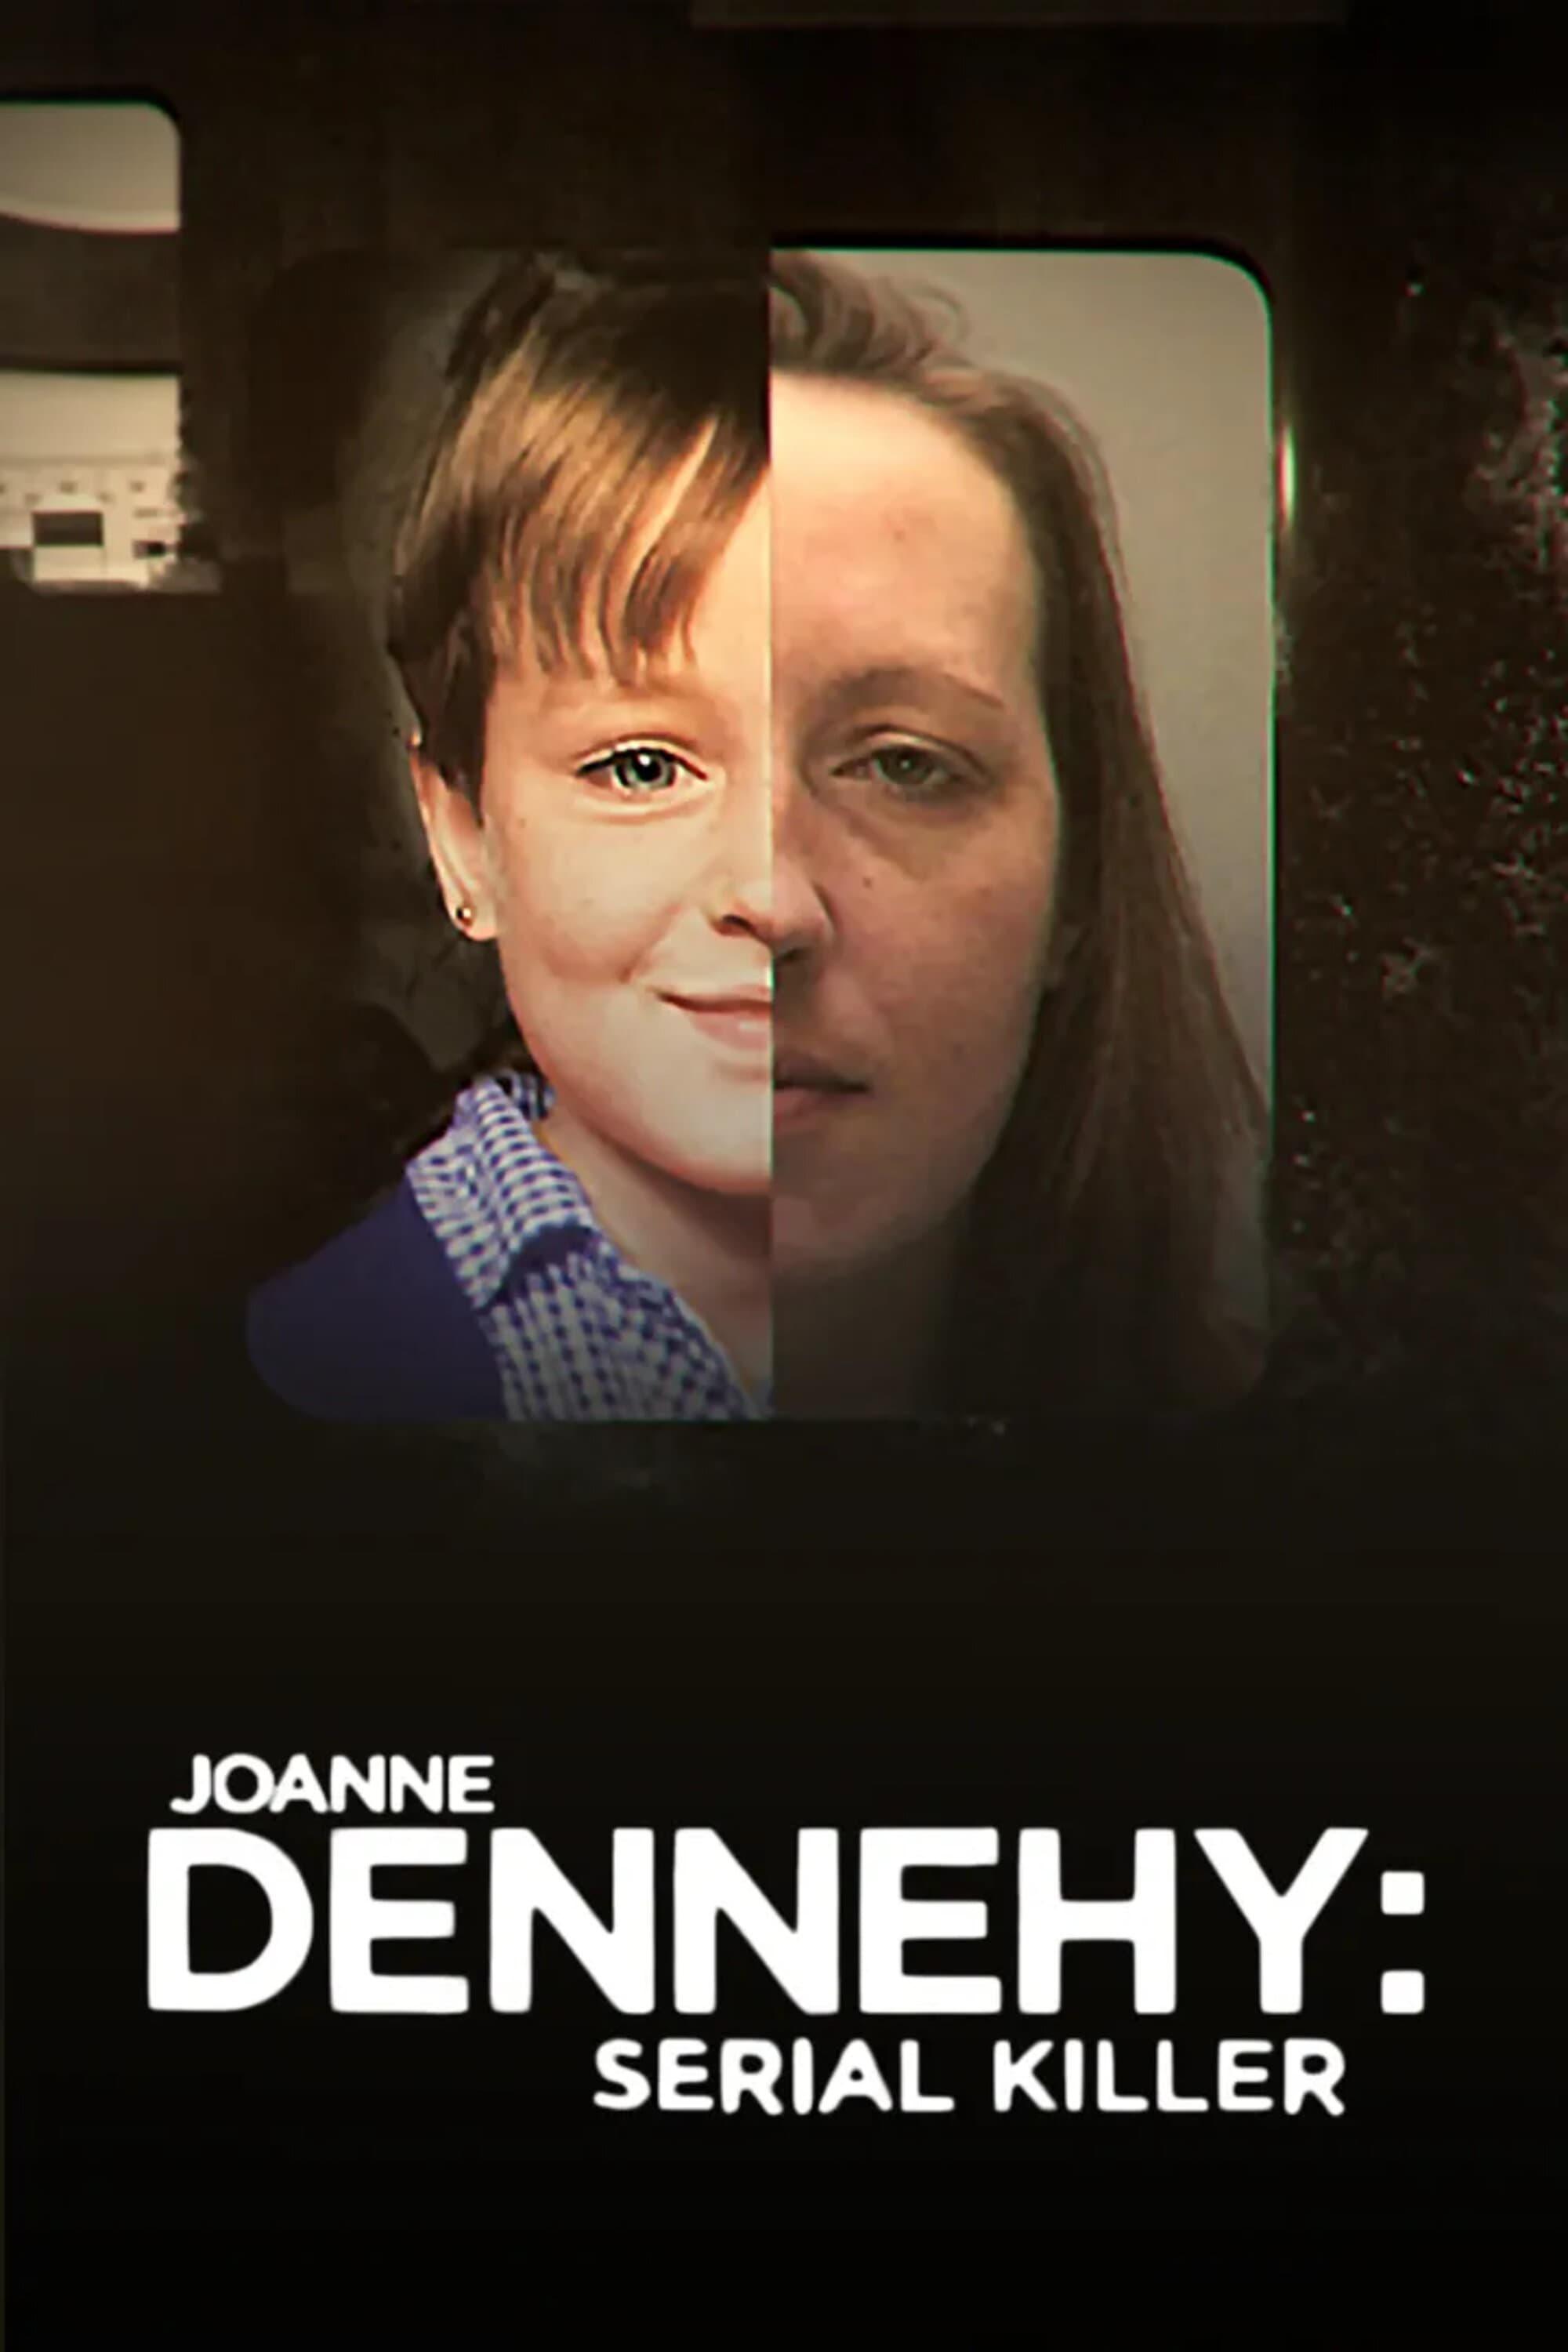 Joanne Dennehy: Serial Killer poster